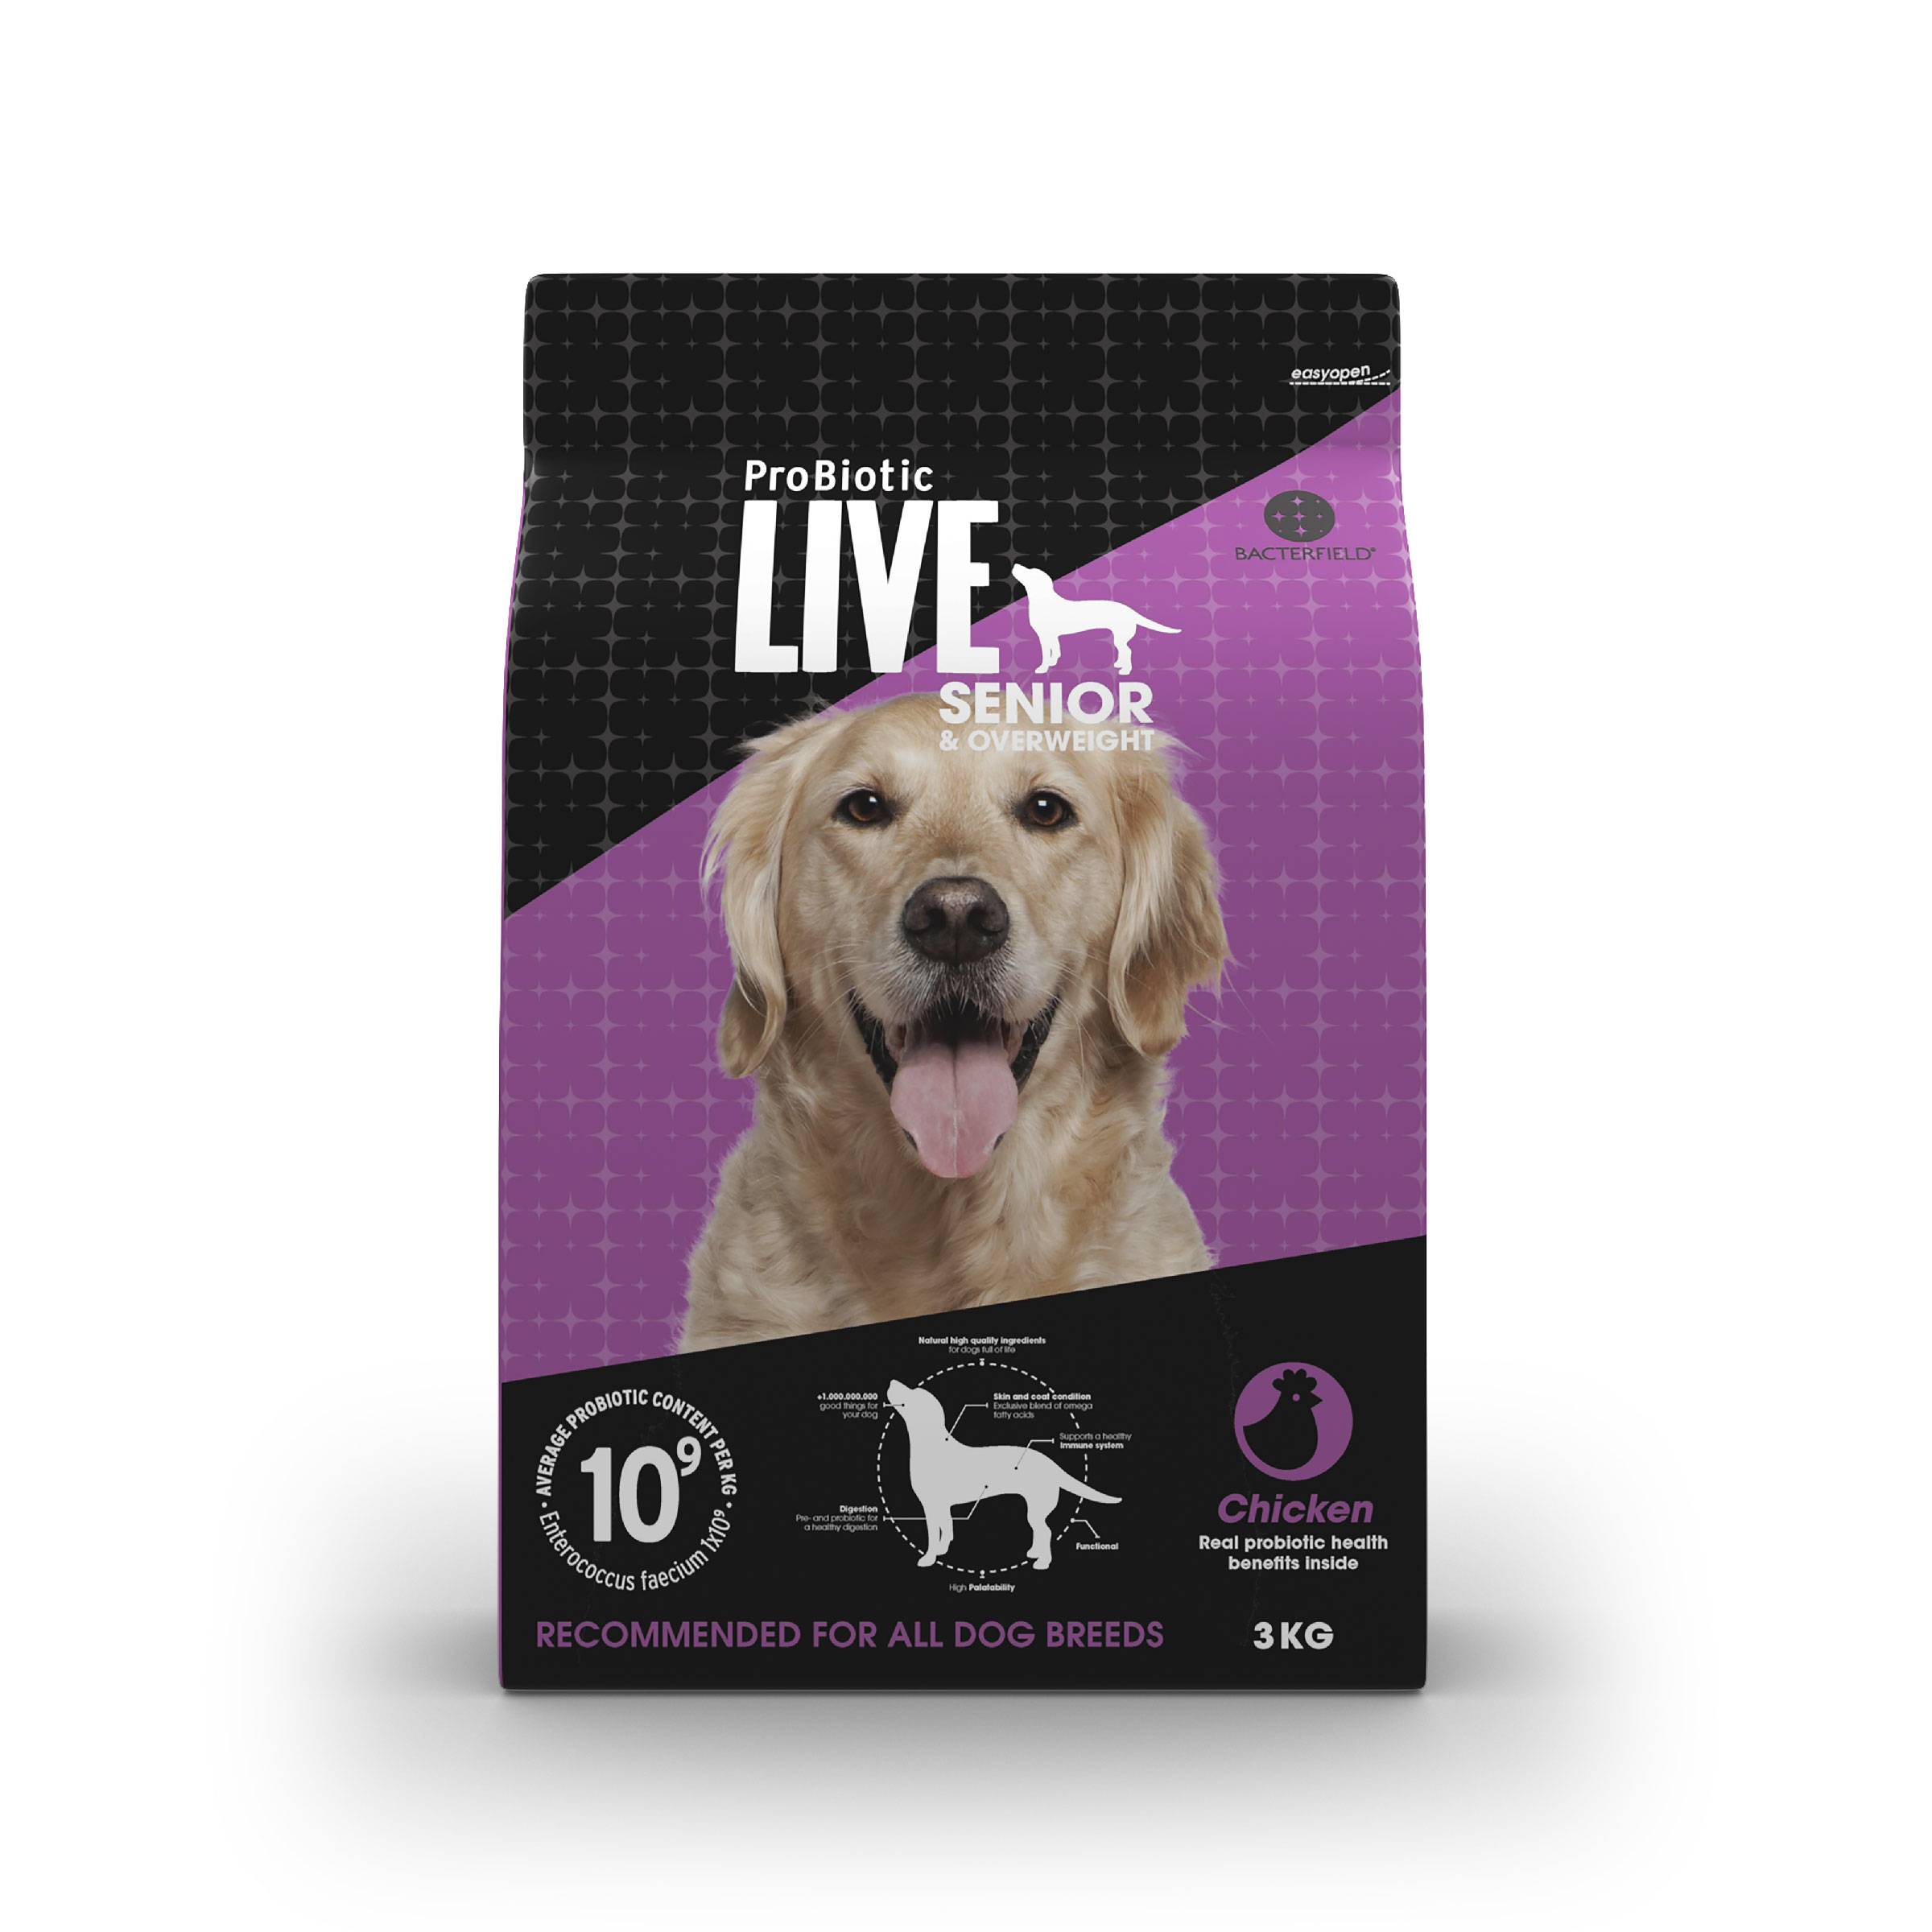 Probiotic Live dog food for Adult